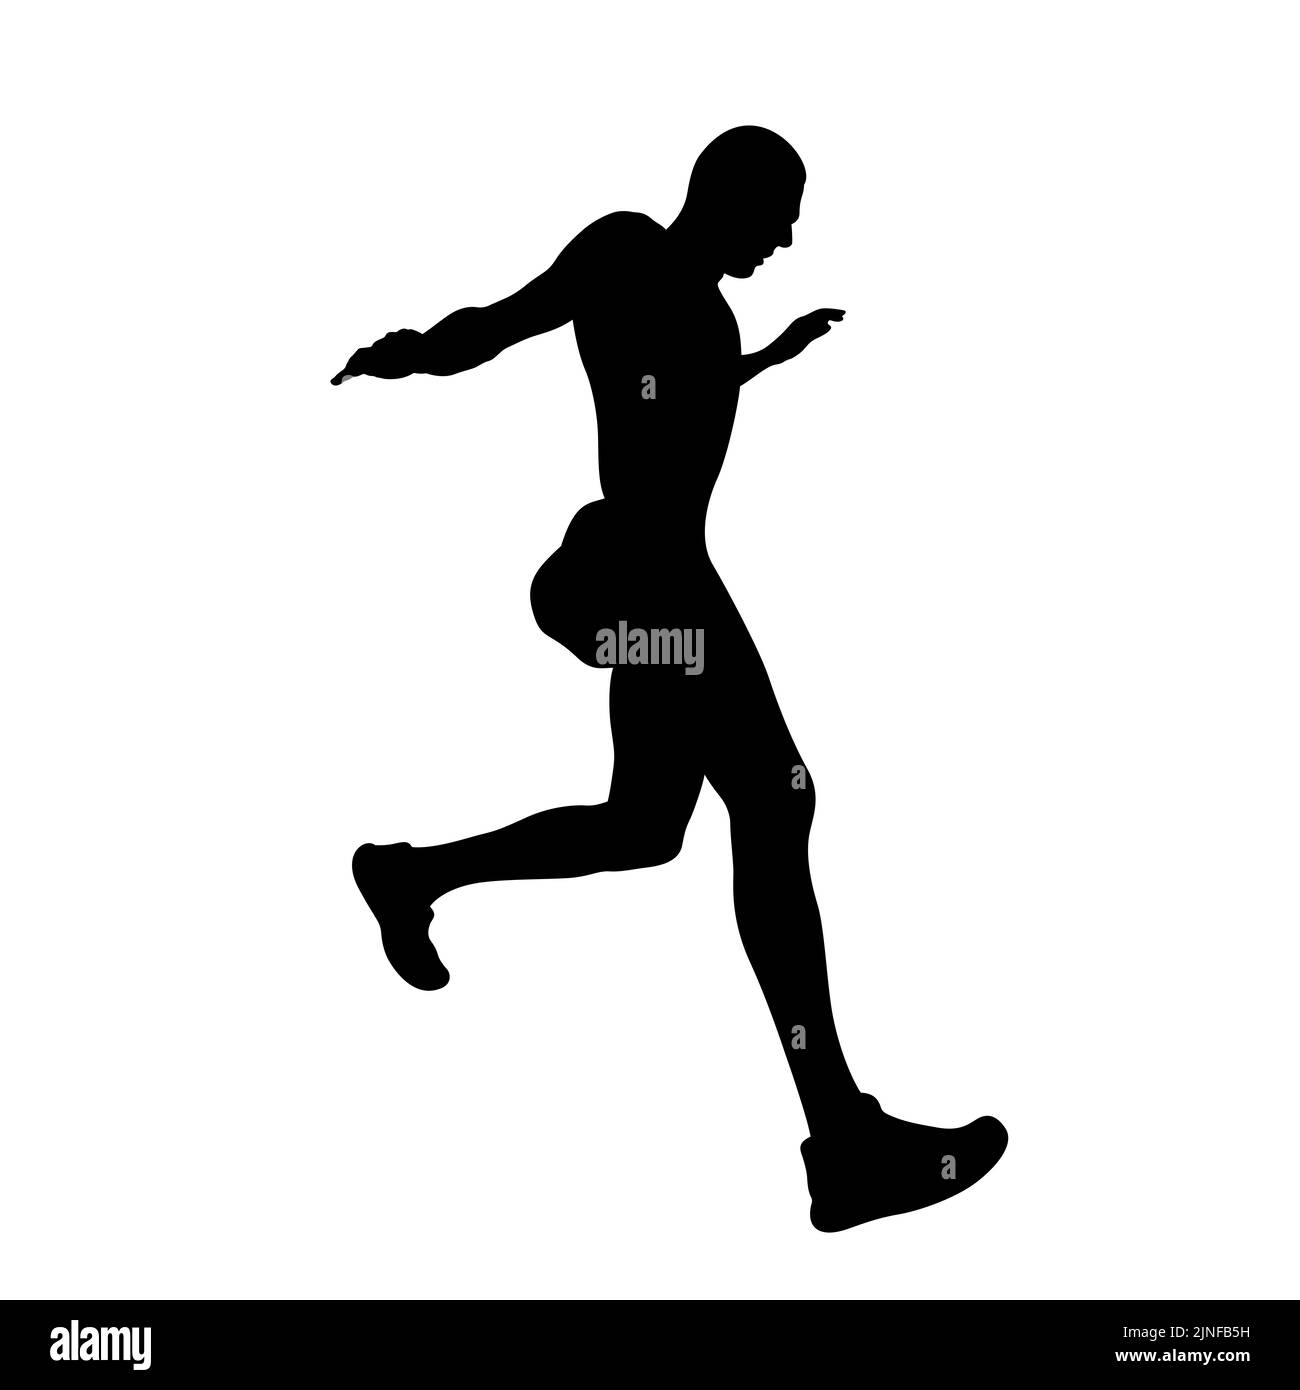 silueta negra de corredor de atletismo de atletismo de atletismo Foto de stock